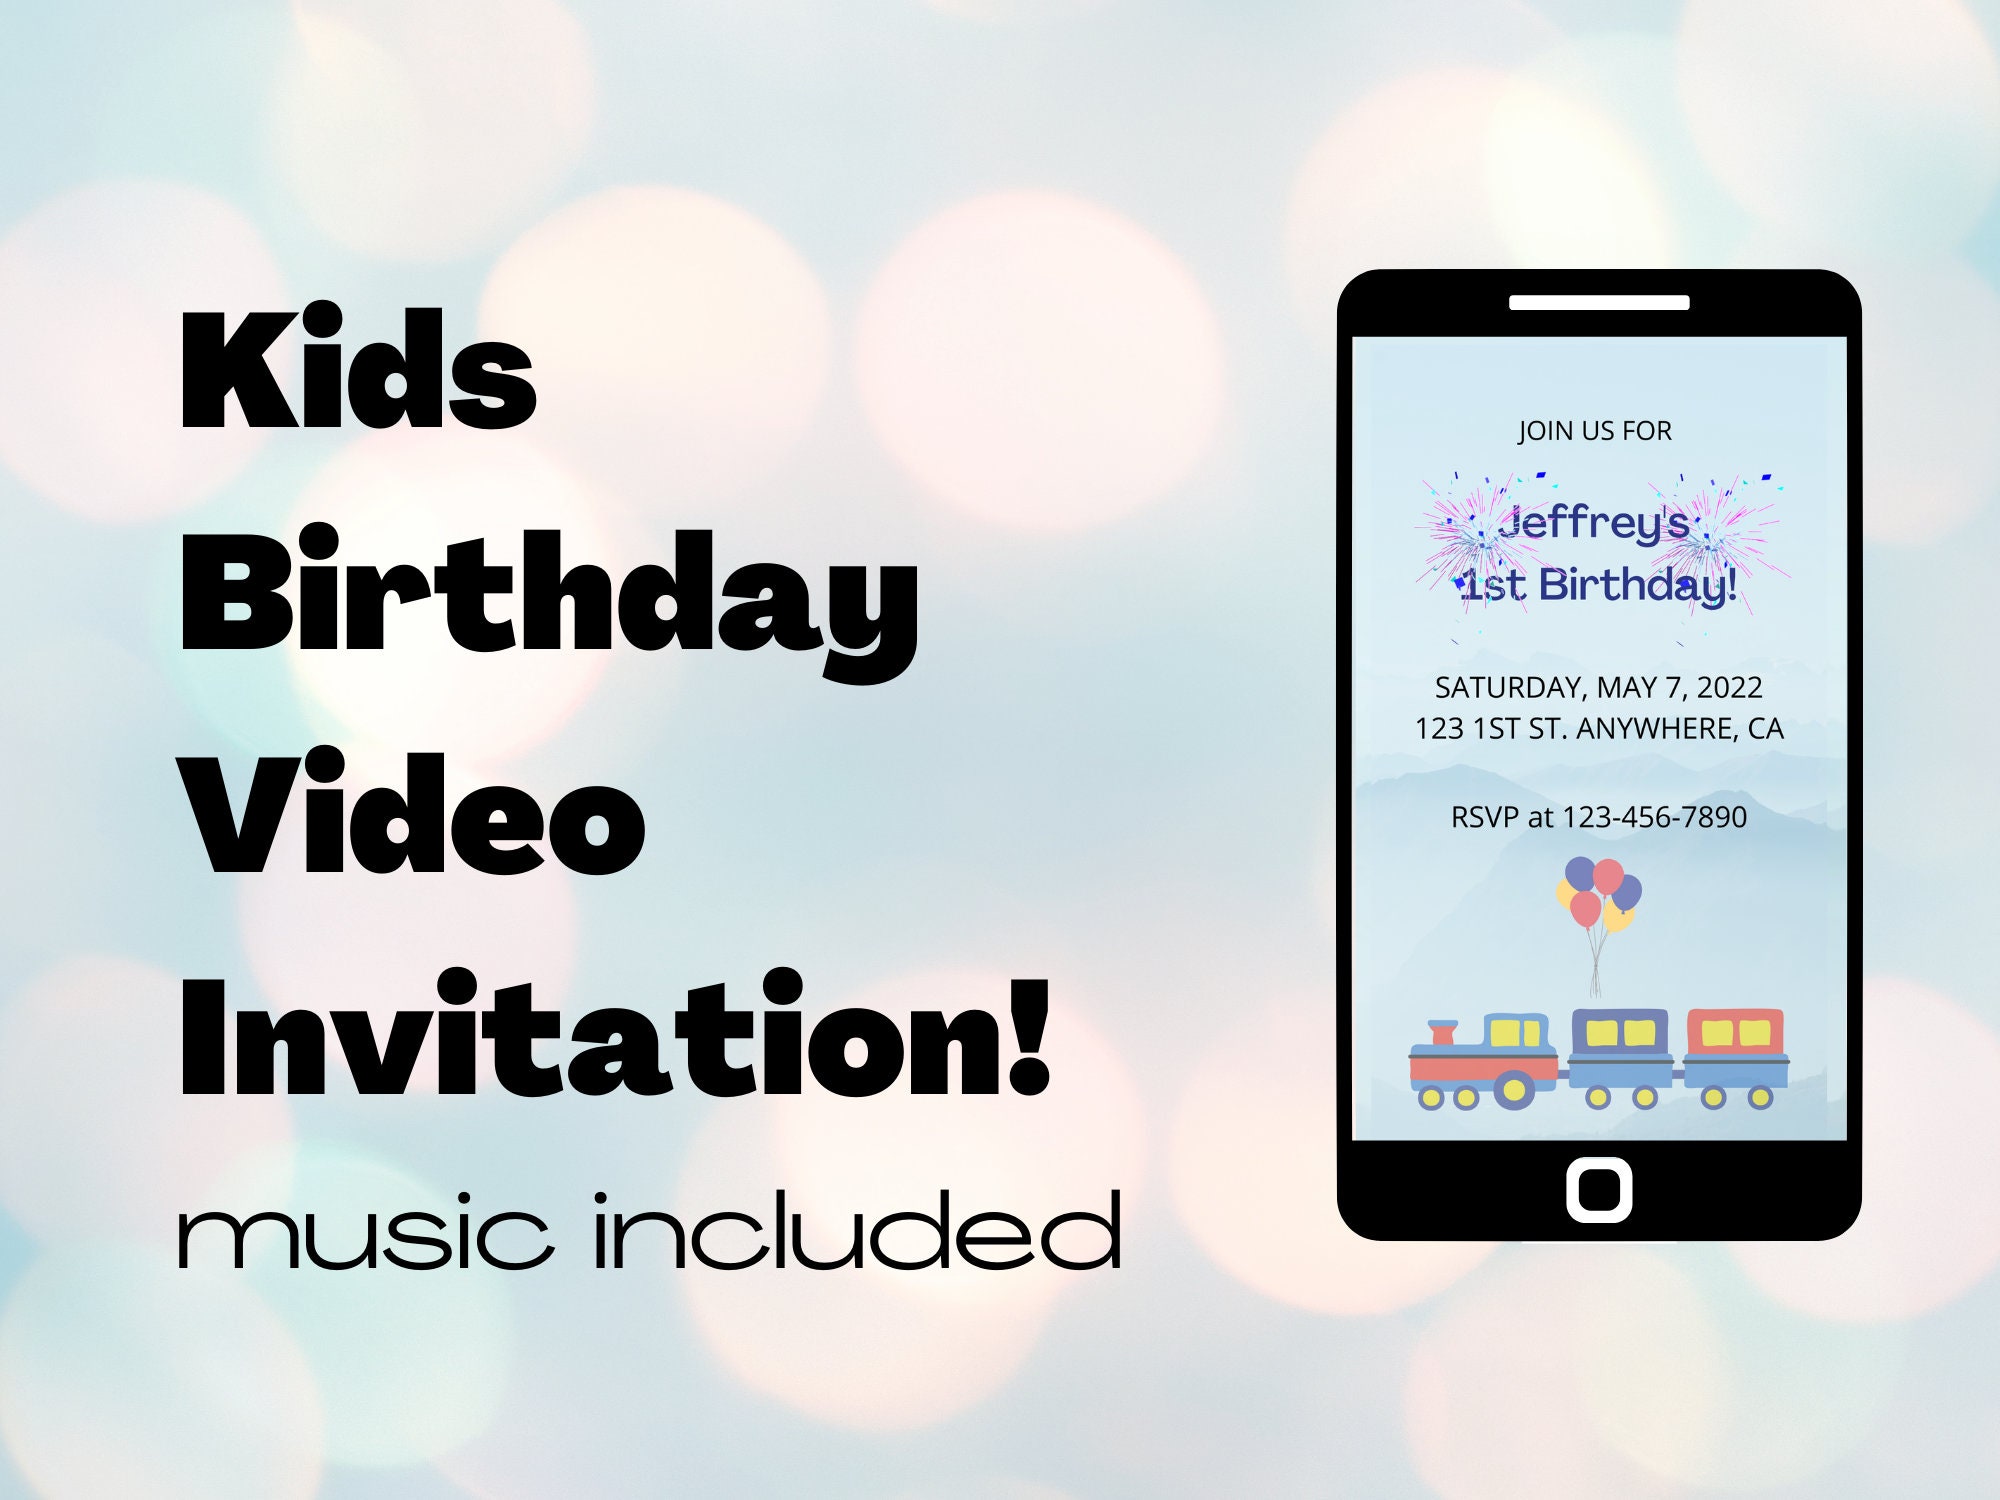 Tạo dựng không gian sinh nhật tuyệt vời với Kids Birthday Invitation Animation - một cách để khiến các bữa tiệc sinh nhật trở nên ấn tượng và đẳng cấp. Với những hình ảnh hoạt hình dễ thương và âm nhạc sôi động, video sẽ khiến cho các bé sung sướng và vui vẻ hơn bao giờ hết. Hãy cùng xem ngay để thấy điều kỳ diệu đó happening!